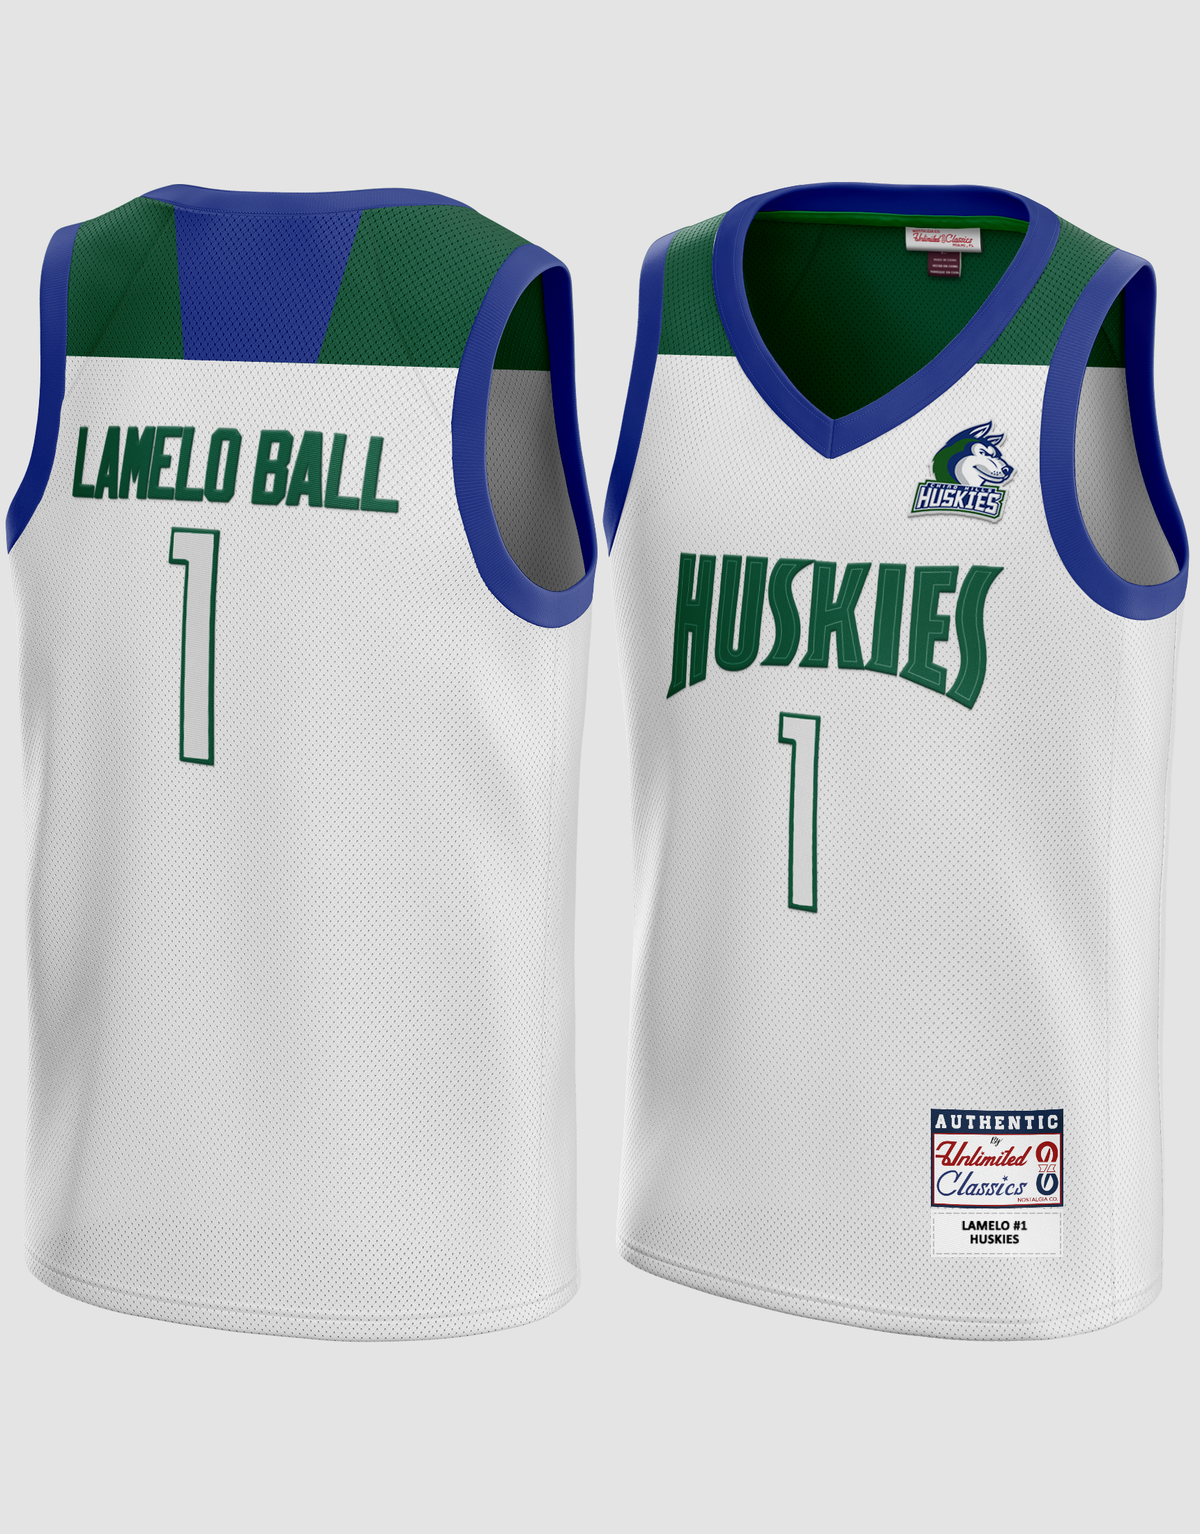 NCAA Chino Hills Huskies 2 Lonzo Ball White High School Basketball Men  Jersey